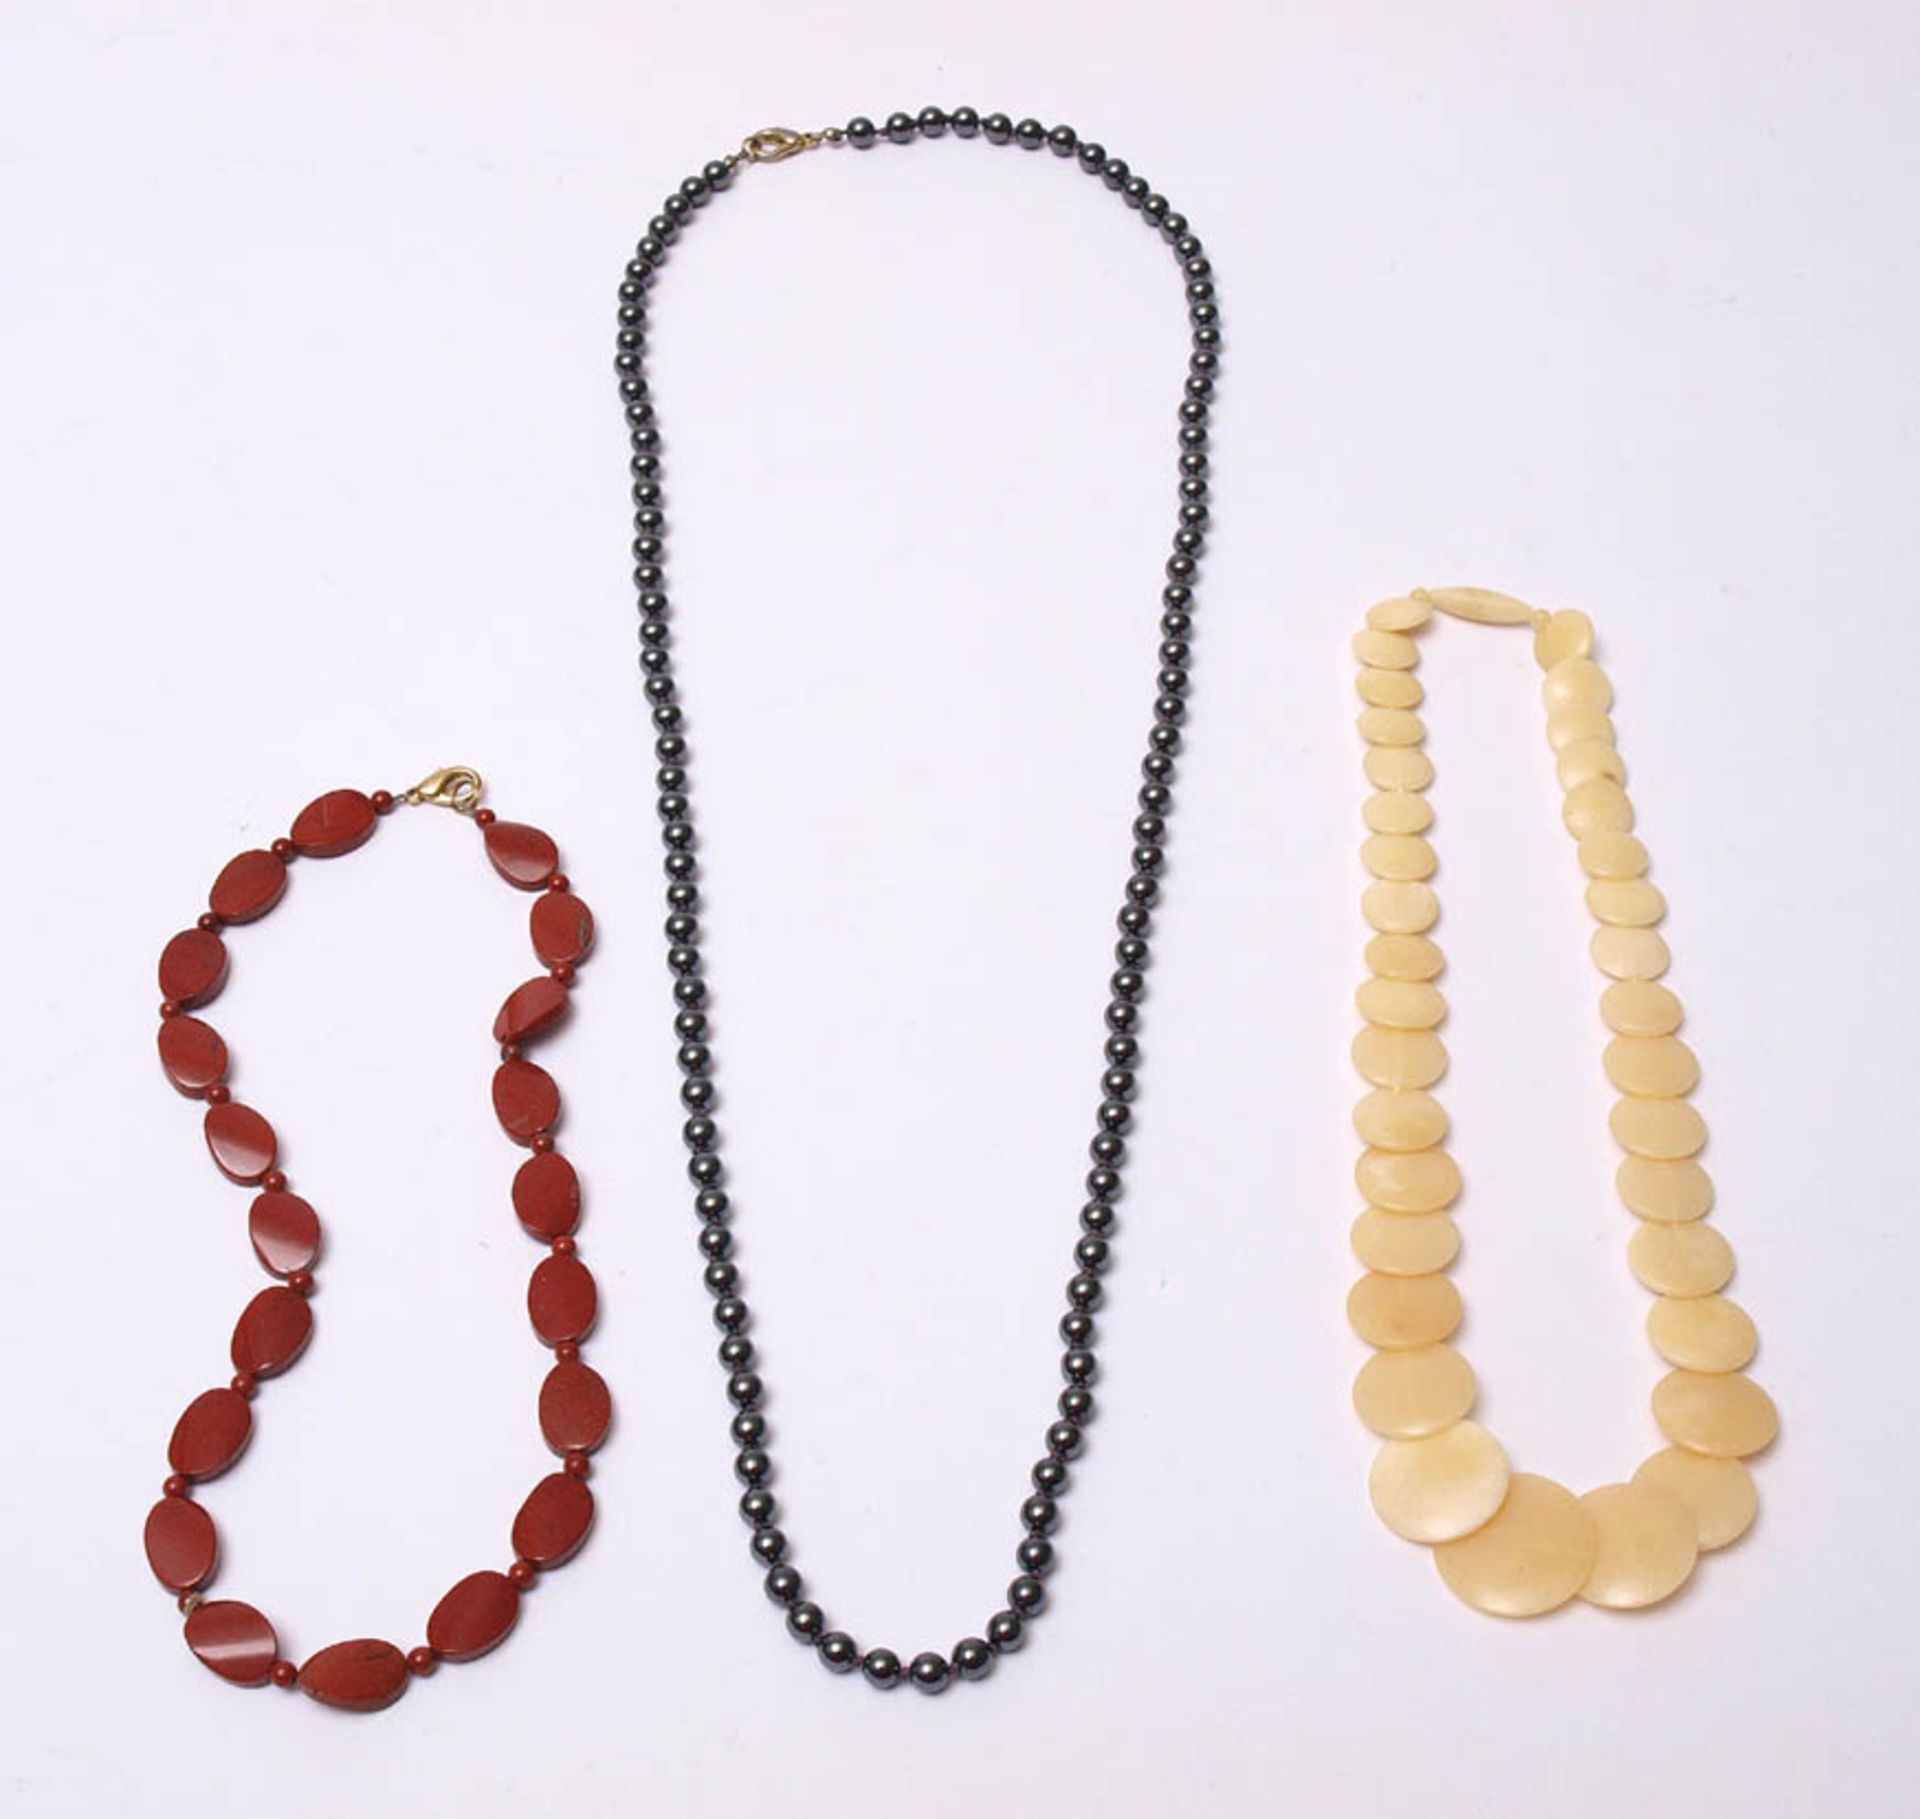 KonvolutBestehend aus drei Halsketten aus Jaspis, Blutstein bzw. weißem Marmor. Unterschiedliche